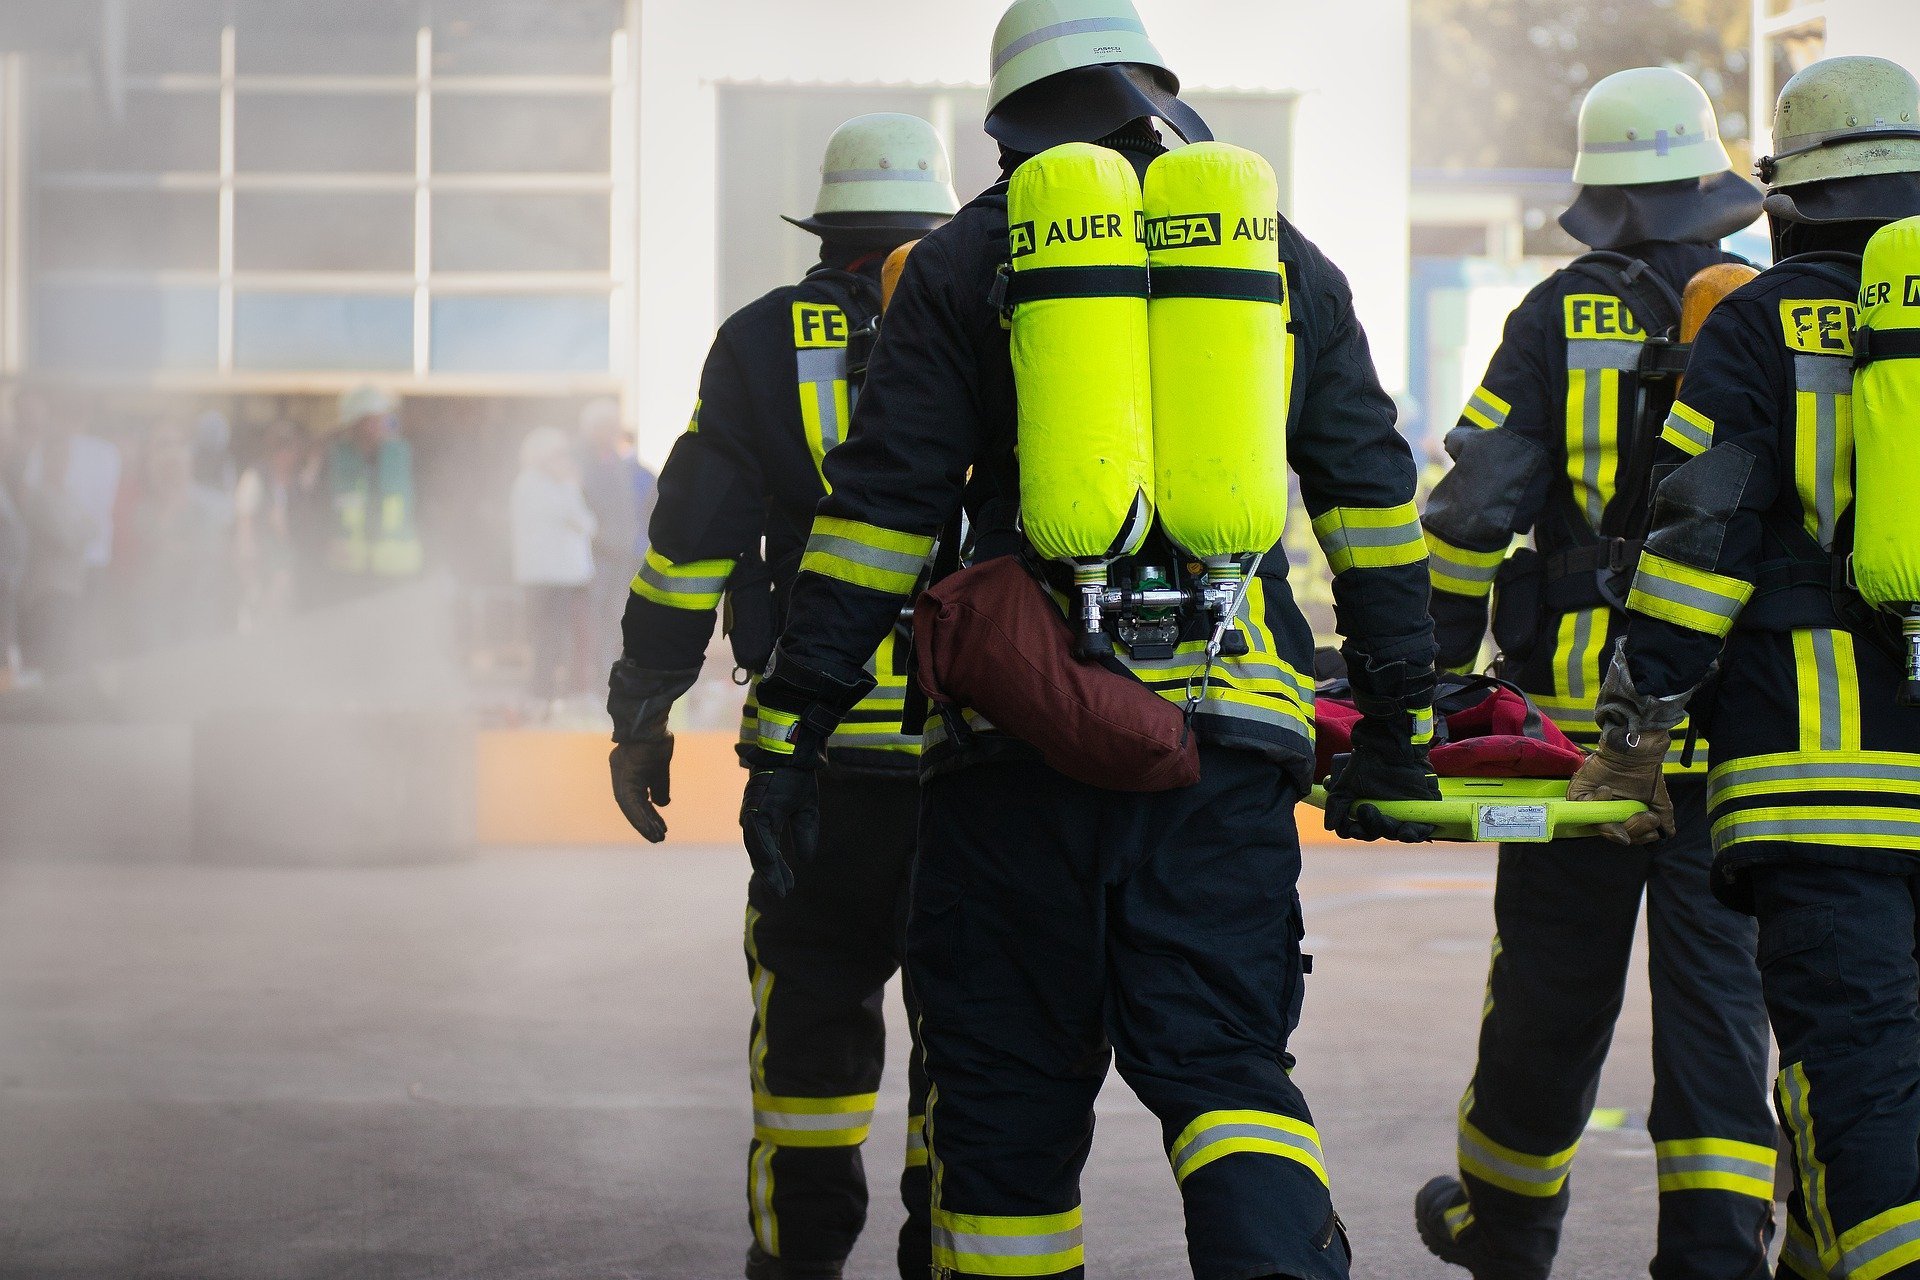 Firefighters on duty | Photo: Pixabay